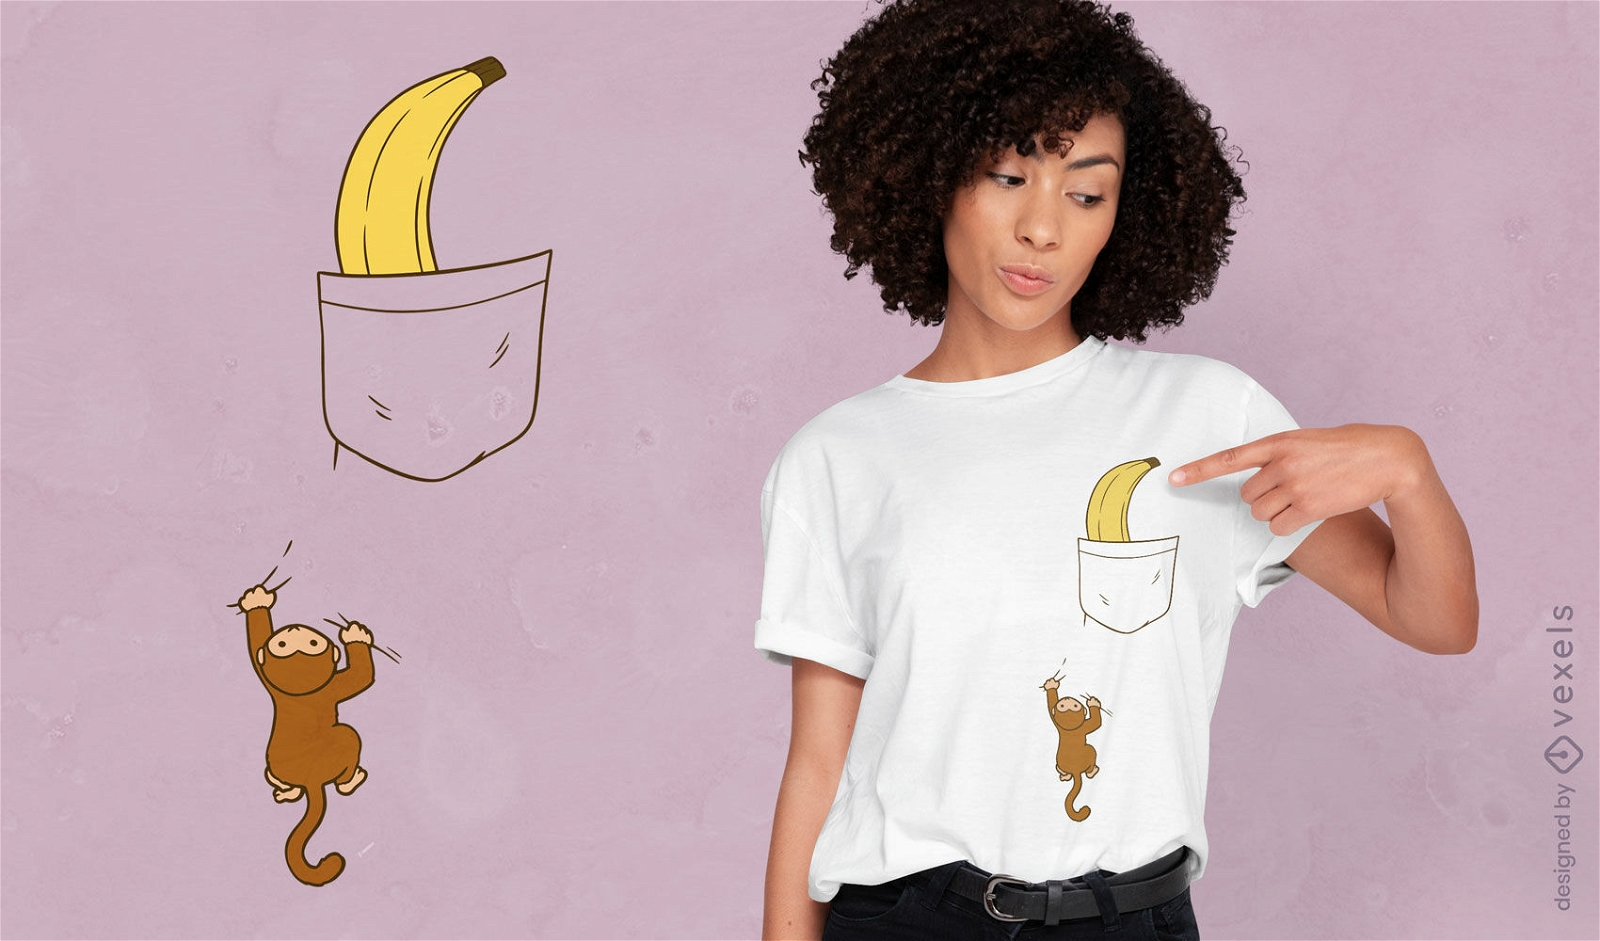 Affenklettern f?r Bananen-T-Shirt-Design